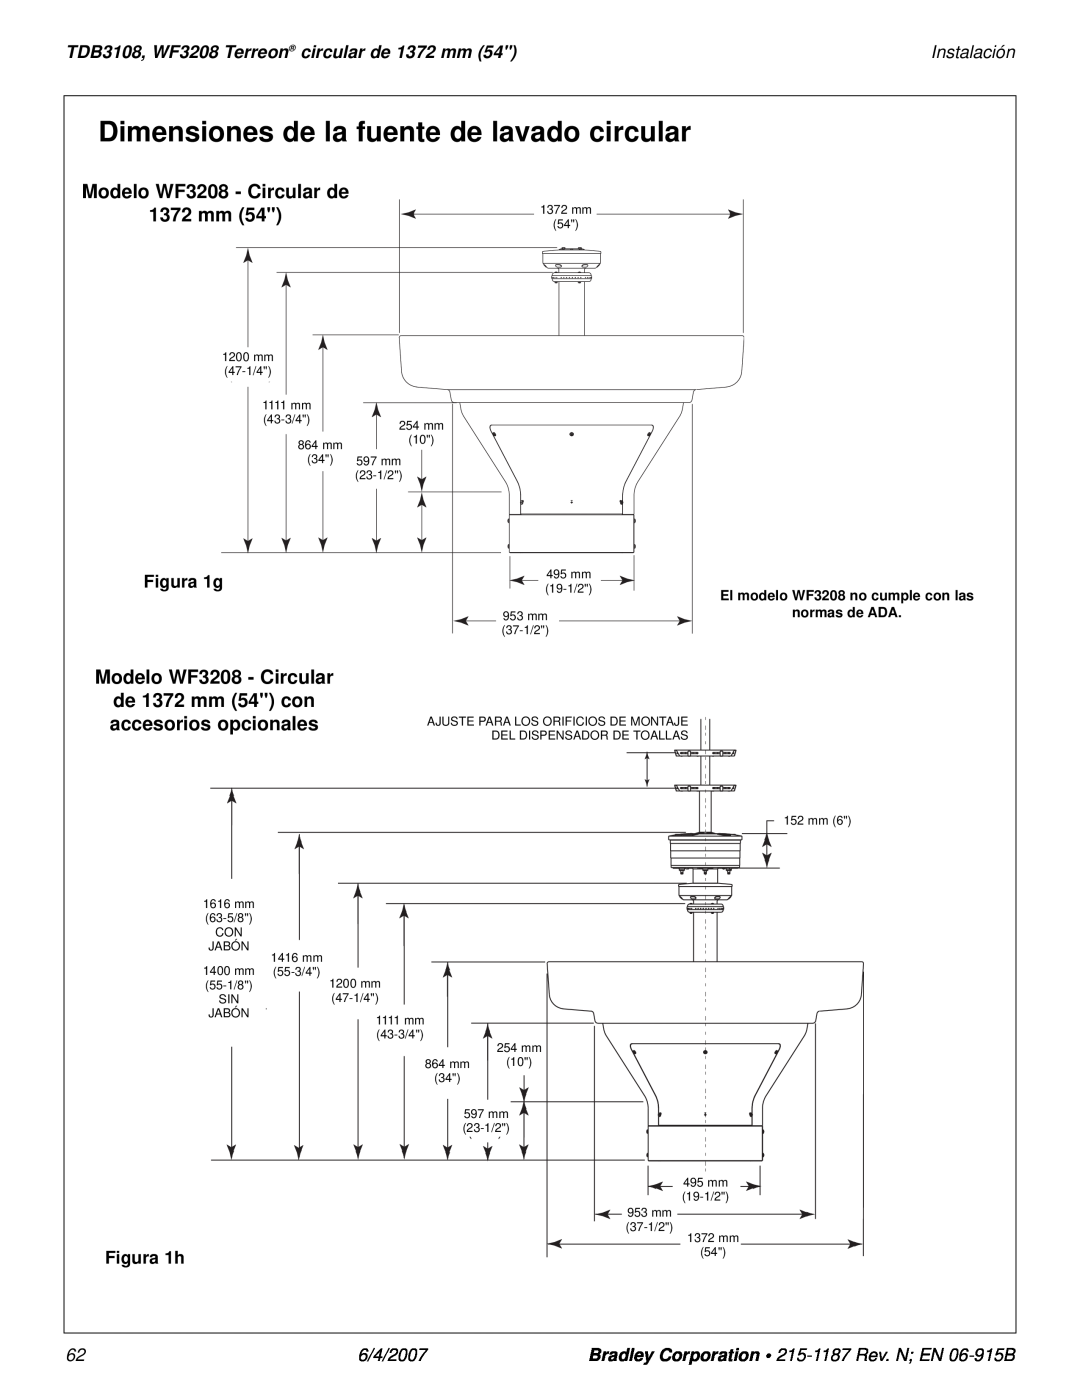 Bradley Smoker TDB3108 Dimensiones de la fuente de lavado circular, Modelo WF3208 - Circular de, 1372 mm, Instalación 